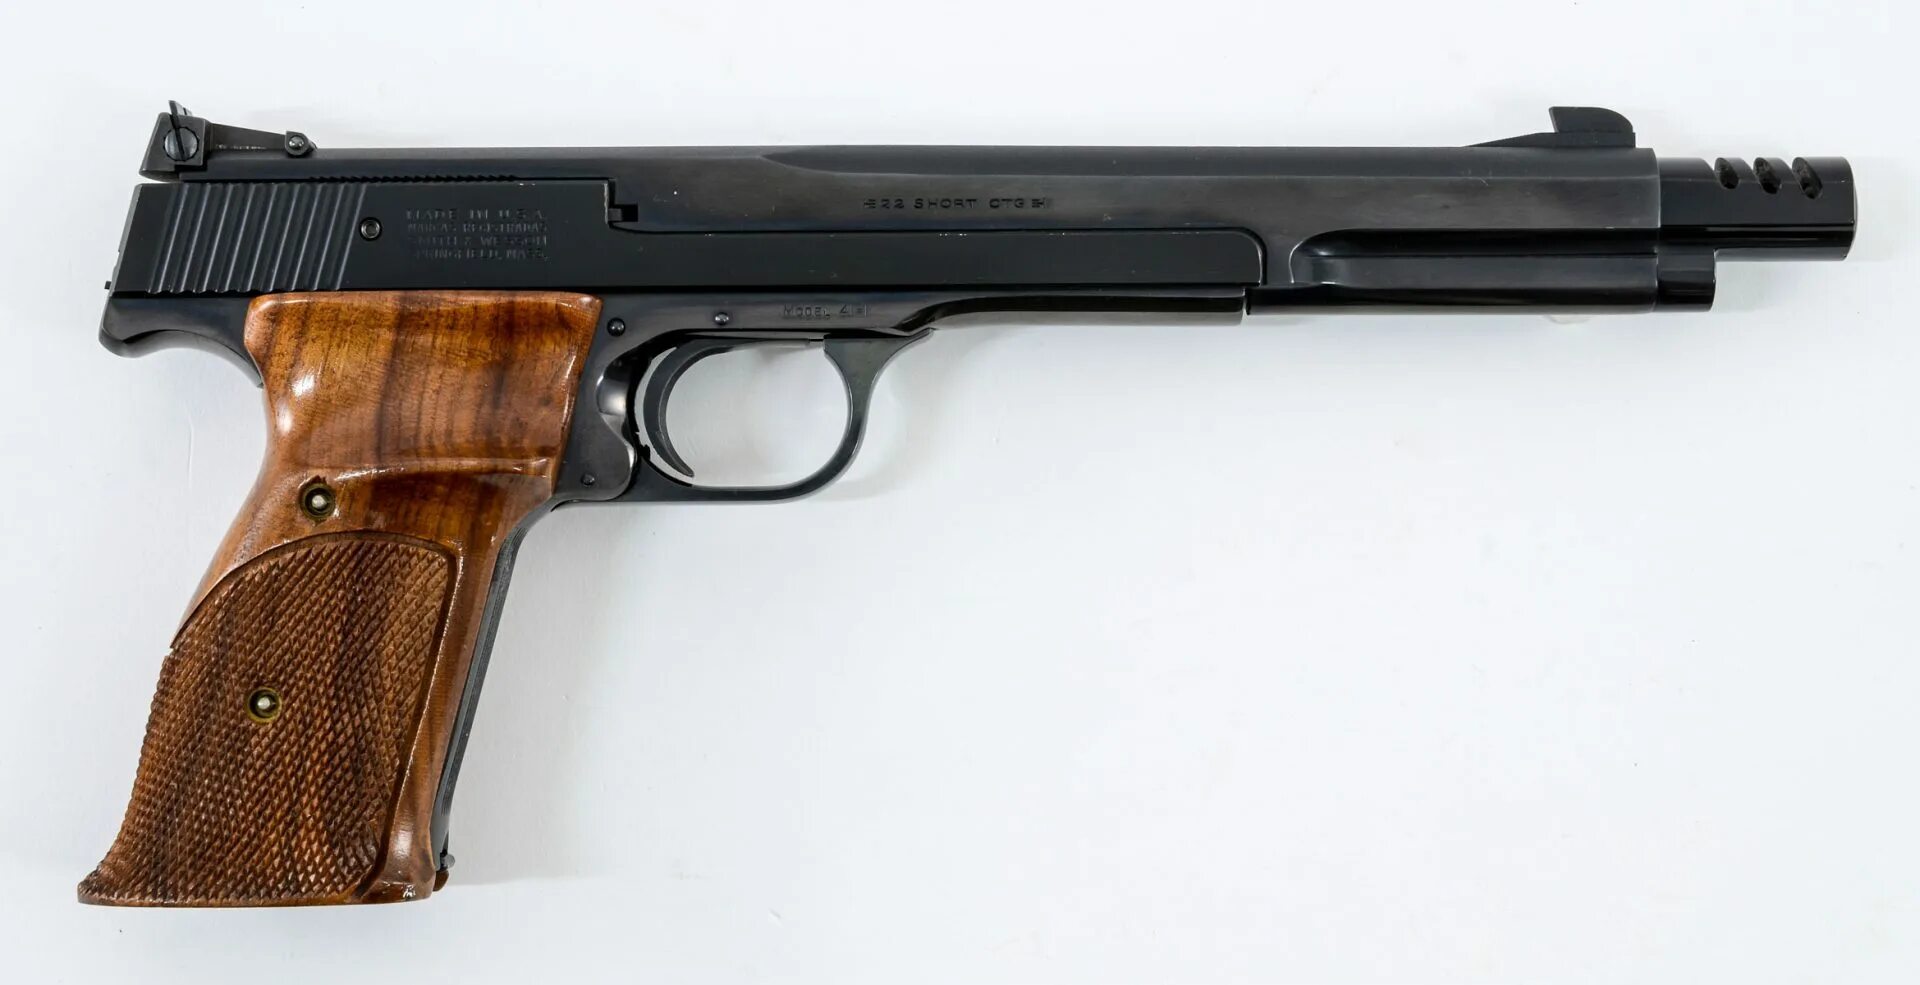 Smith & Wesson model 41. Smith Wesson model 41 22. Смит Вессон мод 41. Оружие под 22 шорт.